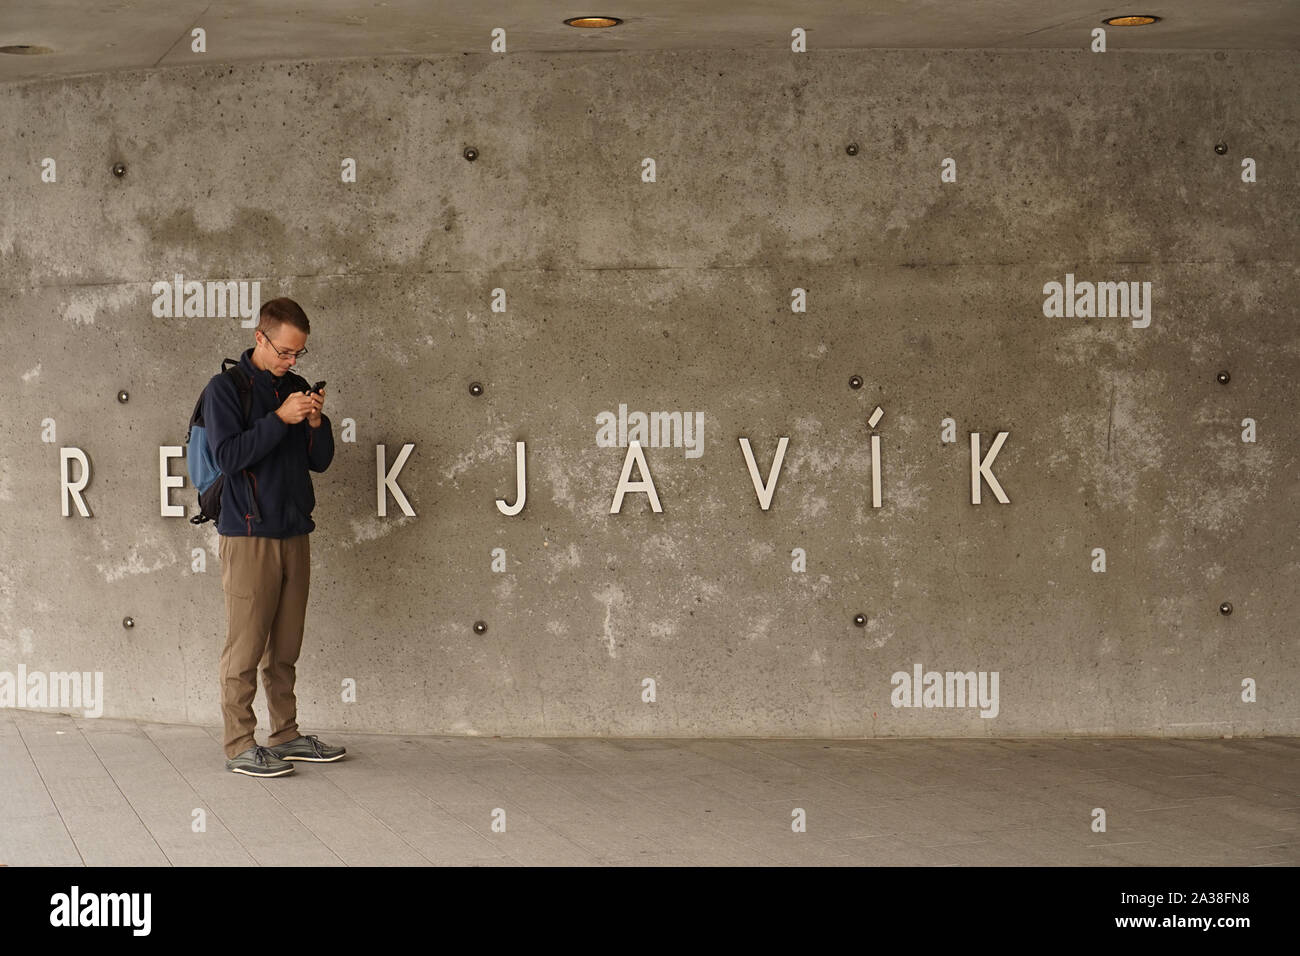 Man standing by téléphone 'Reykjavik' sign Banque D'Images